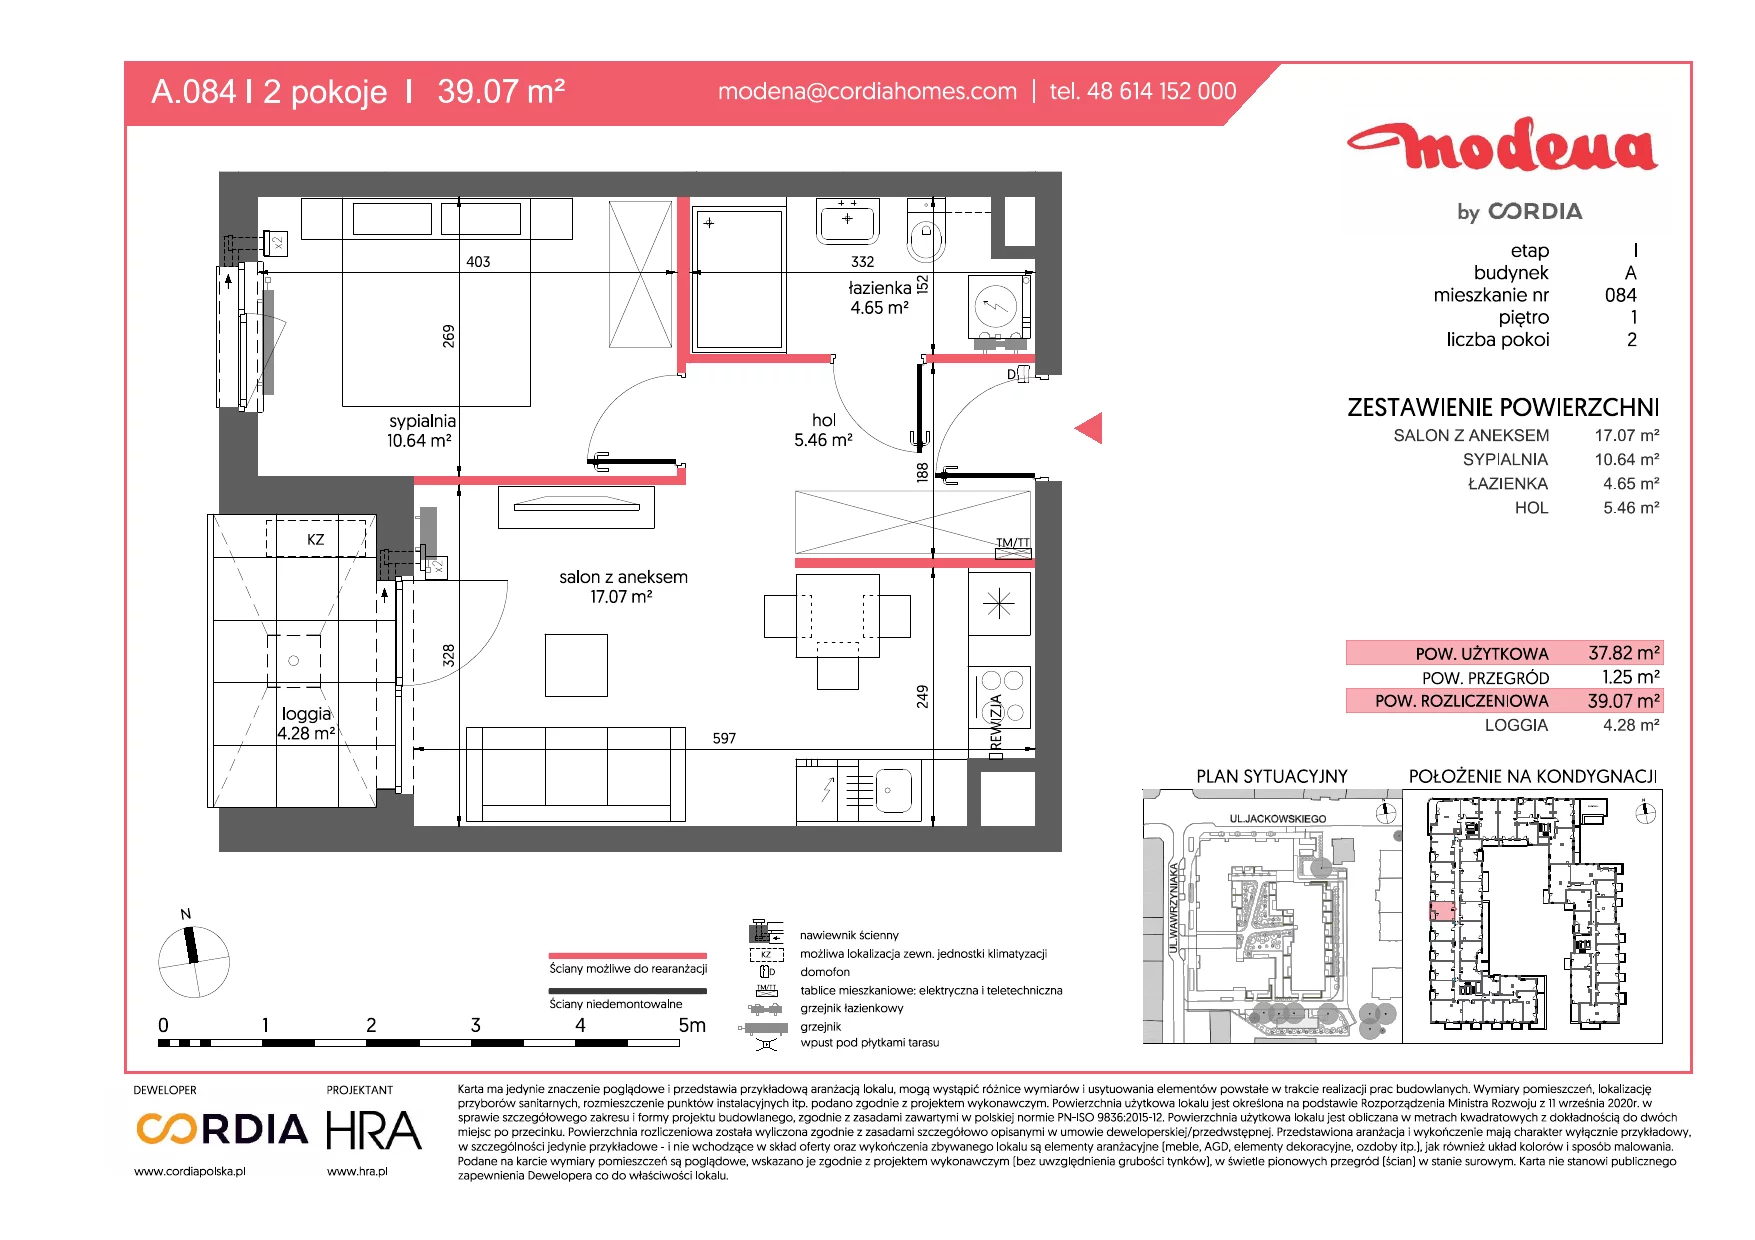 Mieszkanie 39,07 m², piętro 1, oferta nr A.084, Modena, Poznań, Jeżyce, Jeżyce, ul. Jackowskiego 24